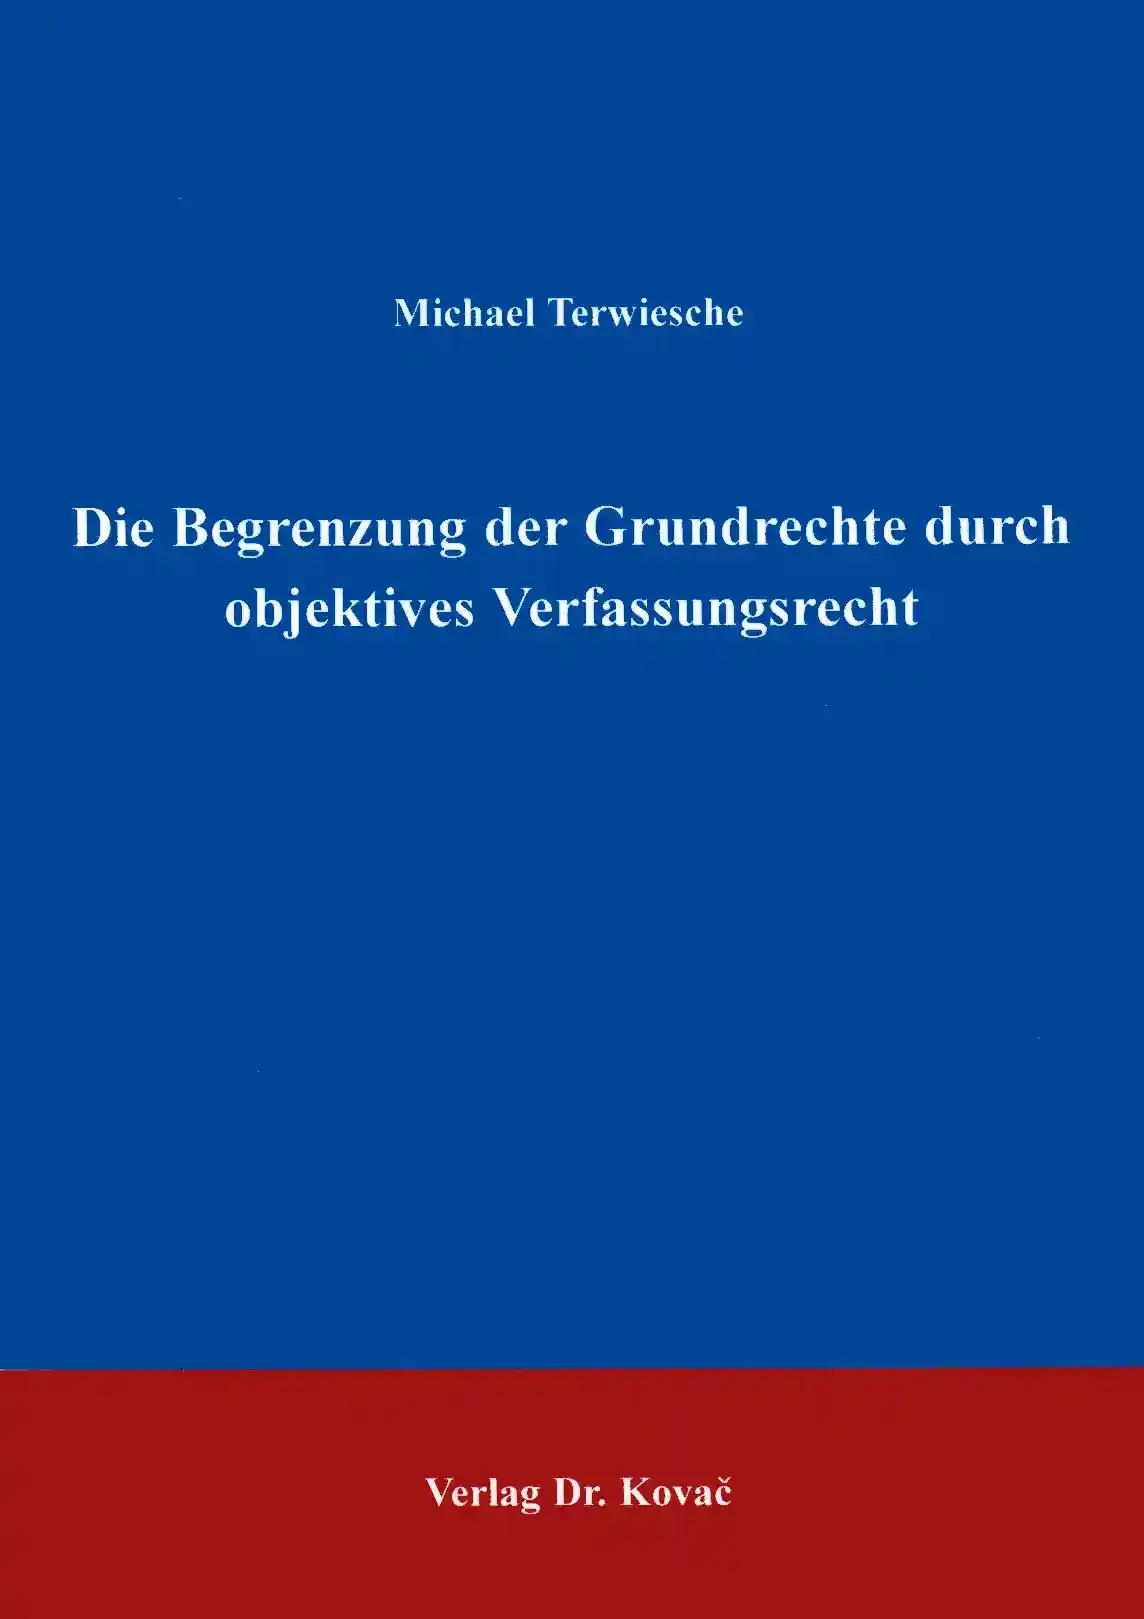 Die Begrenzung der Grundrechte durch objektives Verfassungsrecht (Forschungsarbeit)